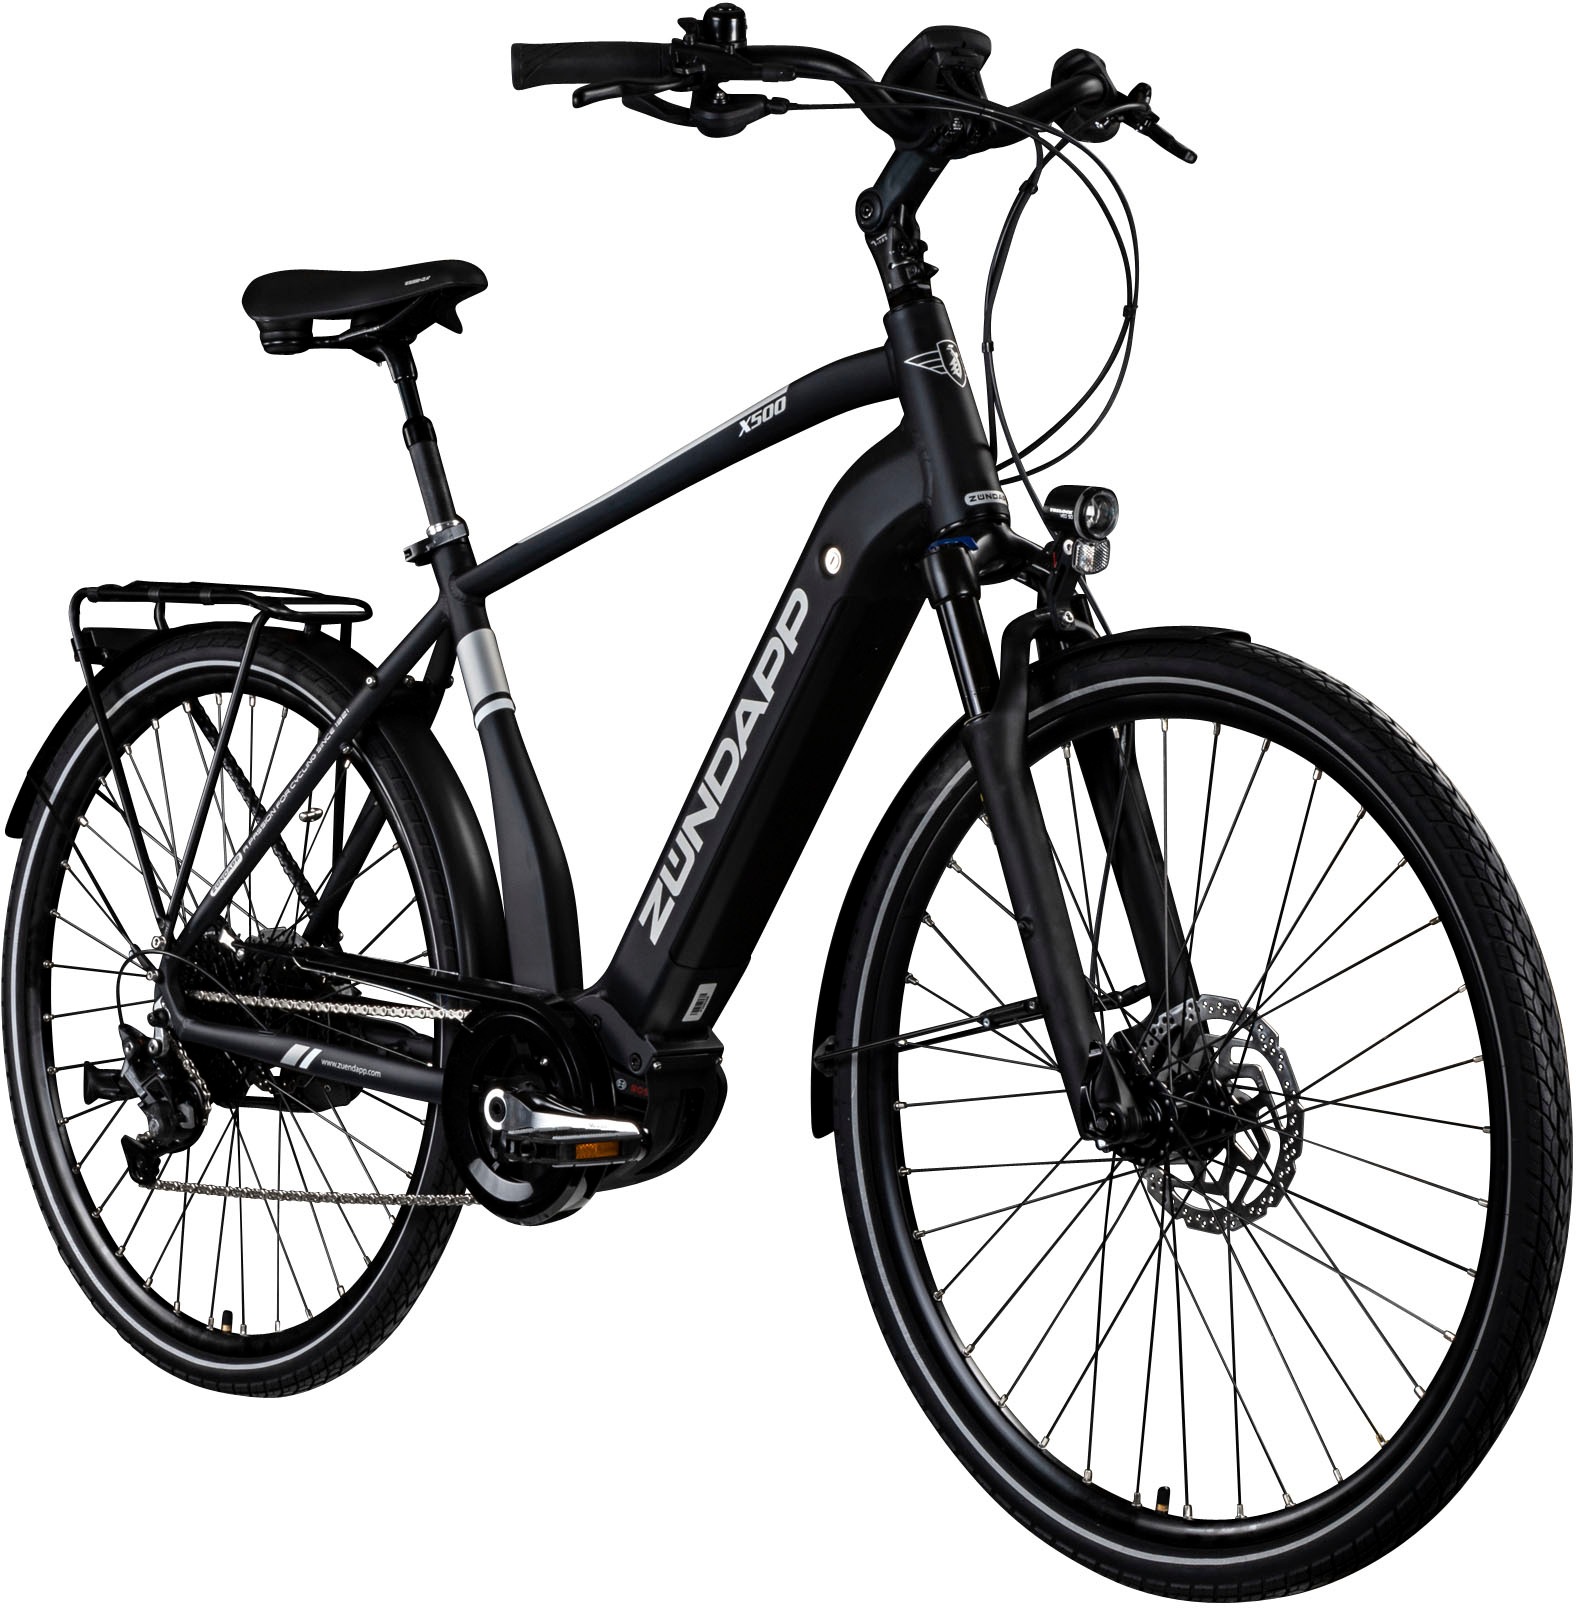 Zündapp E-Bike »X500«, 11 Gang, Shimano, Deore, Mittelmotor 250 W, Pedelec, Elektrofahrrad für Damen u. Herren, Trekkingrad